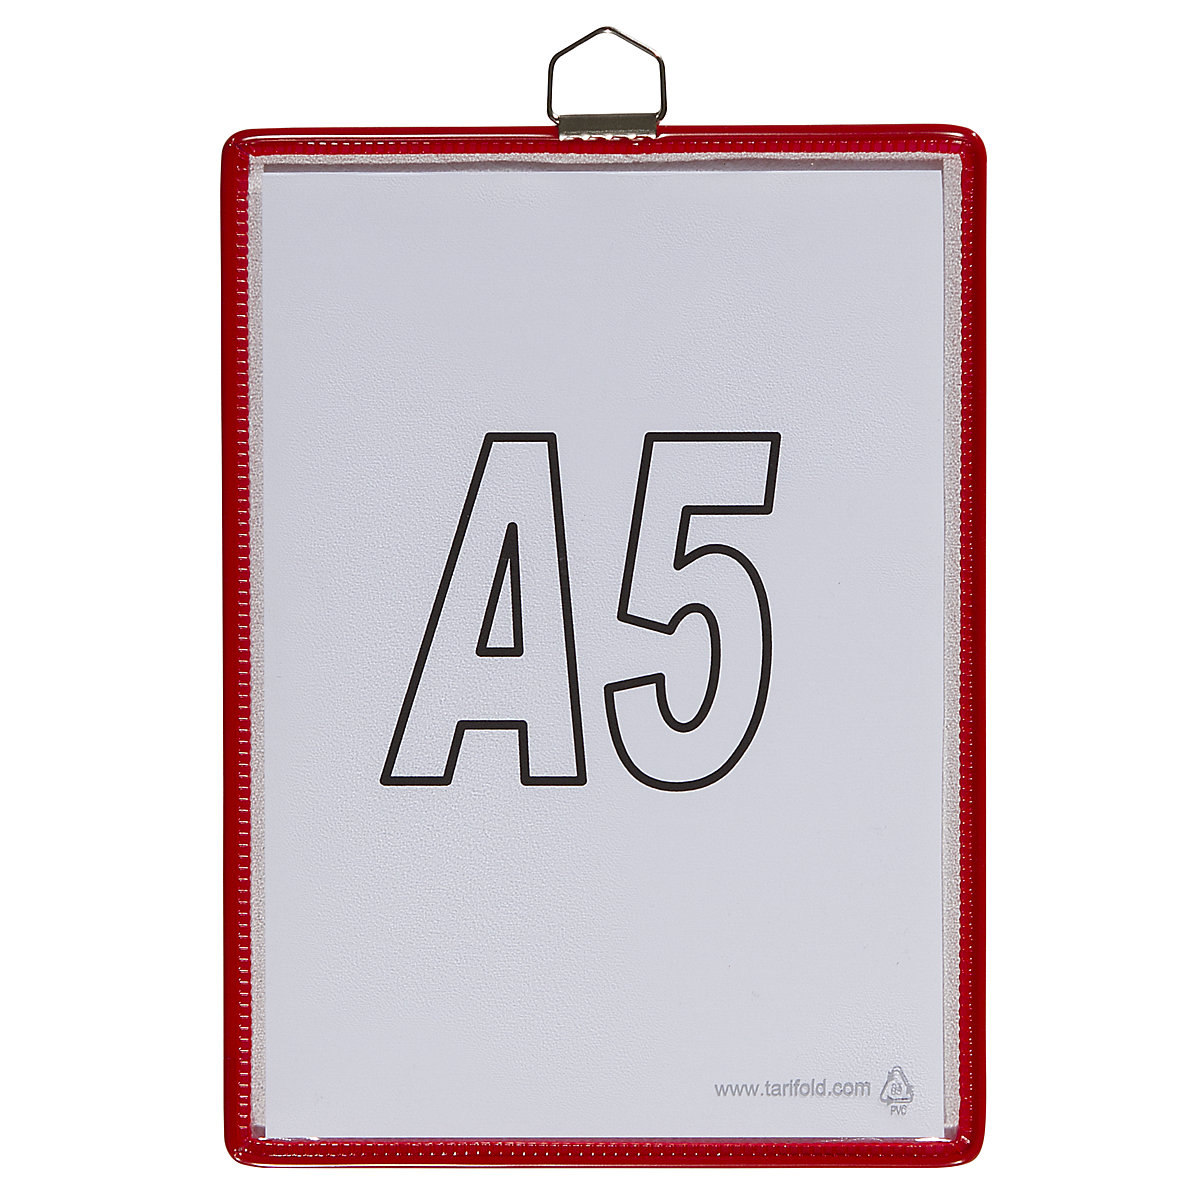 Pochette transparente à accrocher – Tarifold, pour format A5, coloris rouge, lot de 10-7